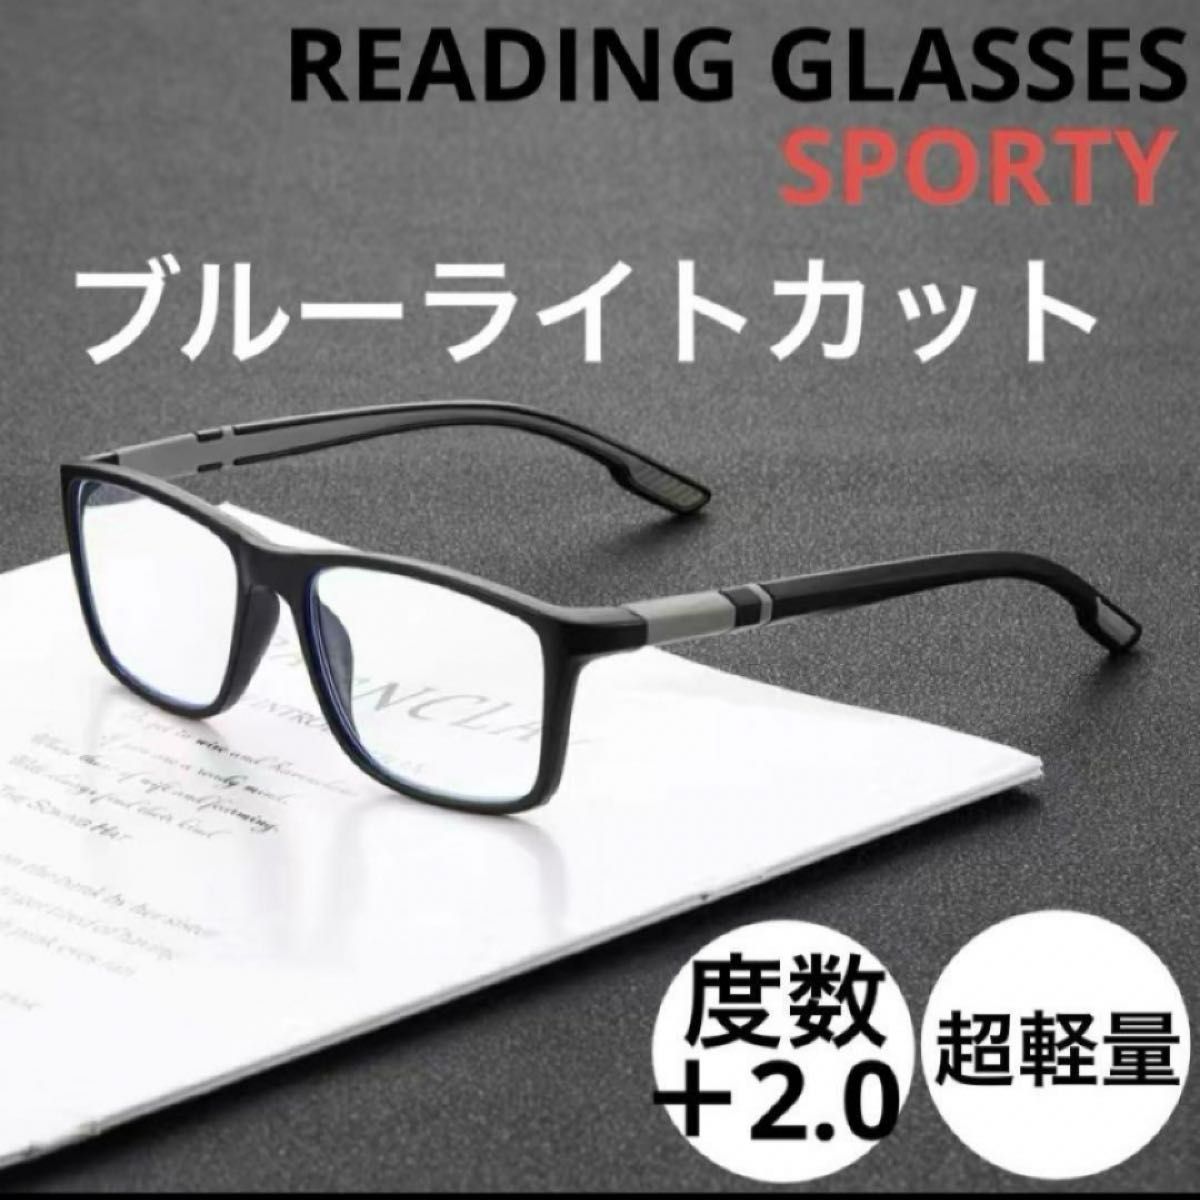 新品 リーディンググラス シニアグラス 老眼鏡＋2.0 BK/GR ユニセックス(男女兼用) ブルーライトカットモデル 超軽量